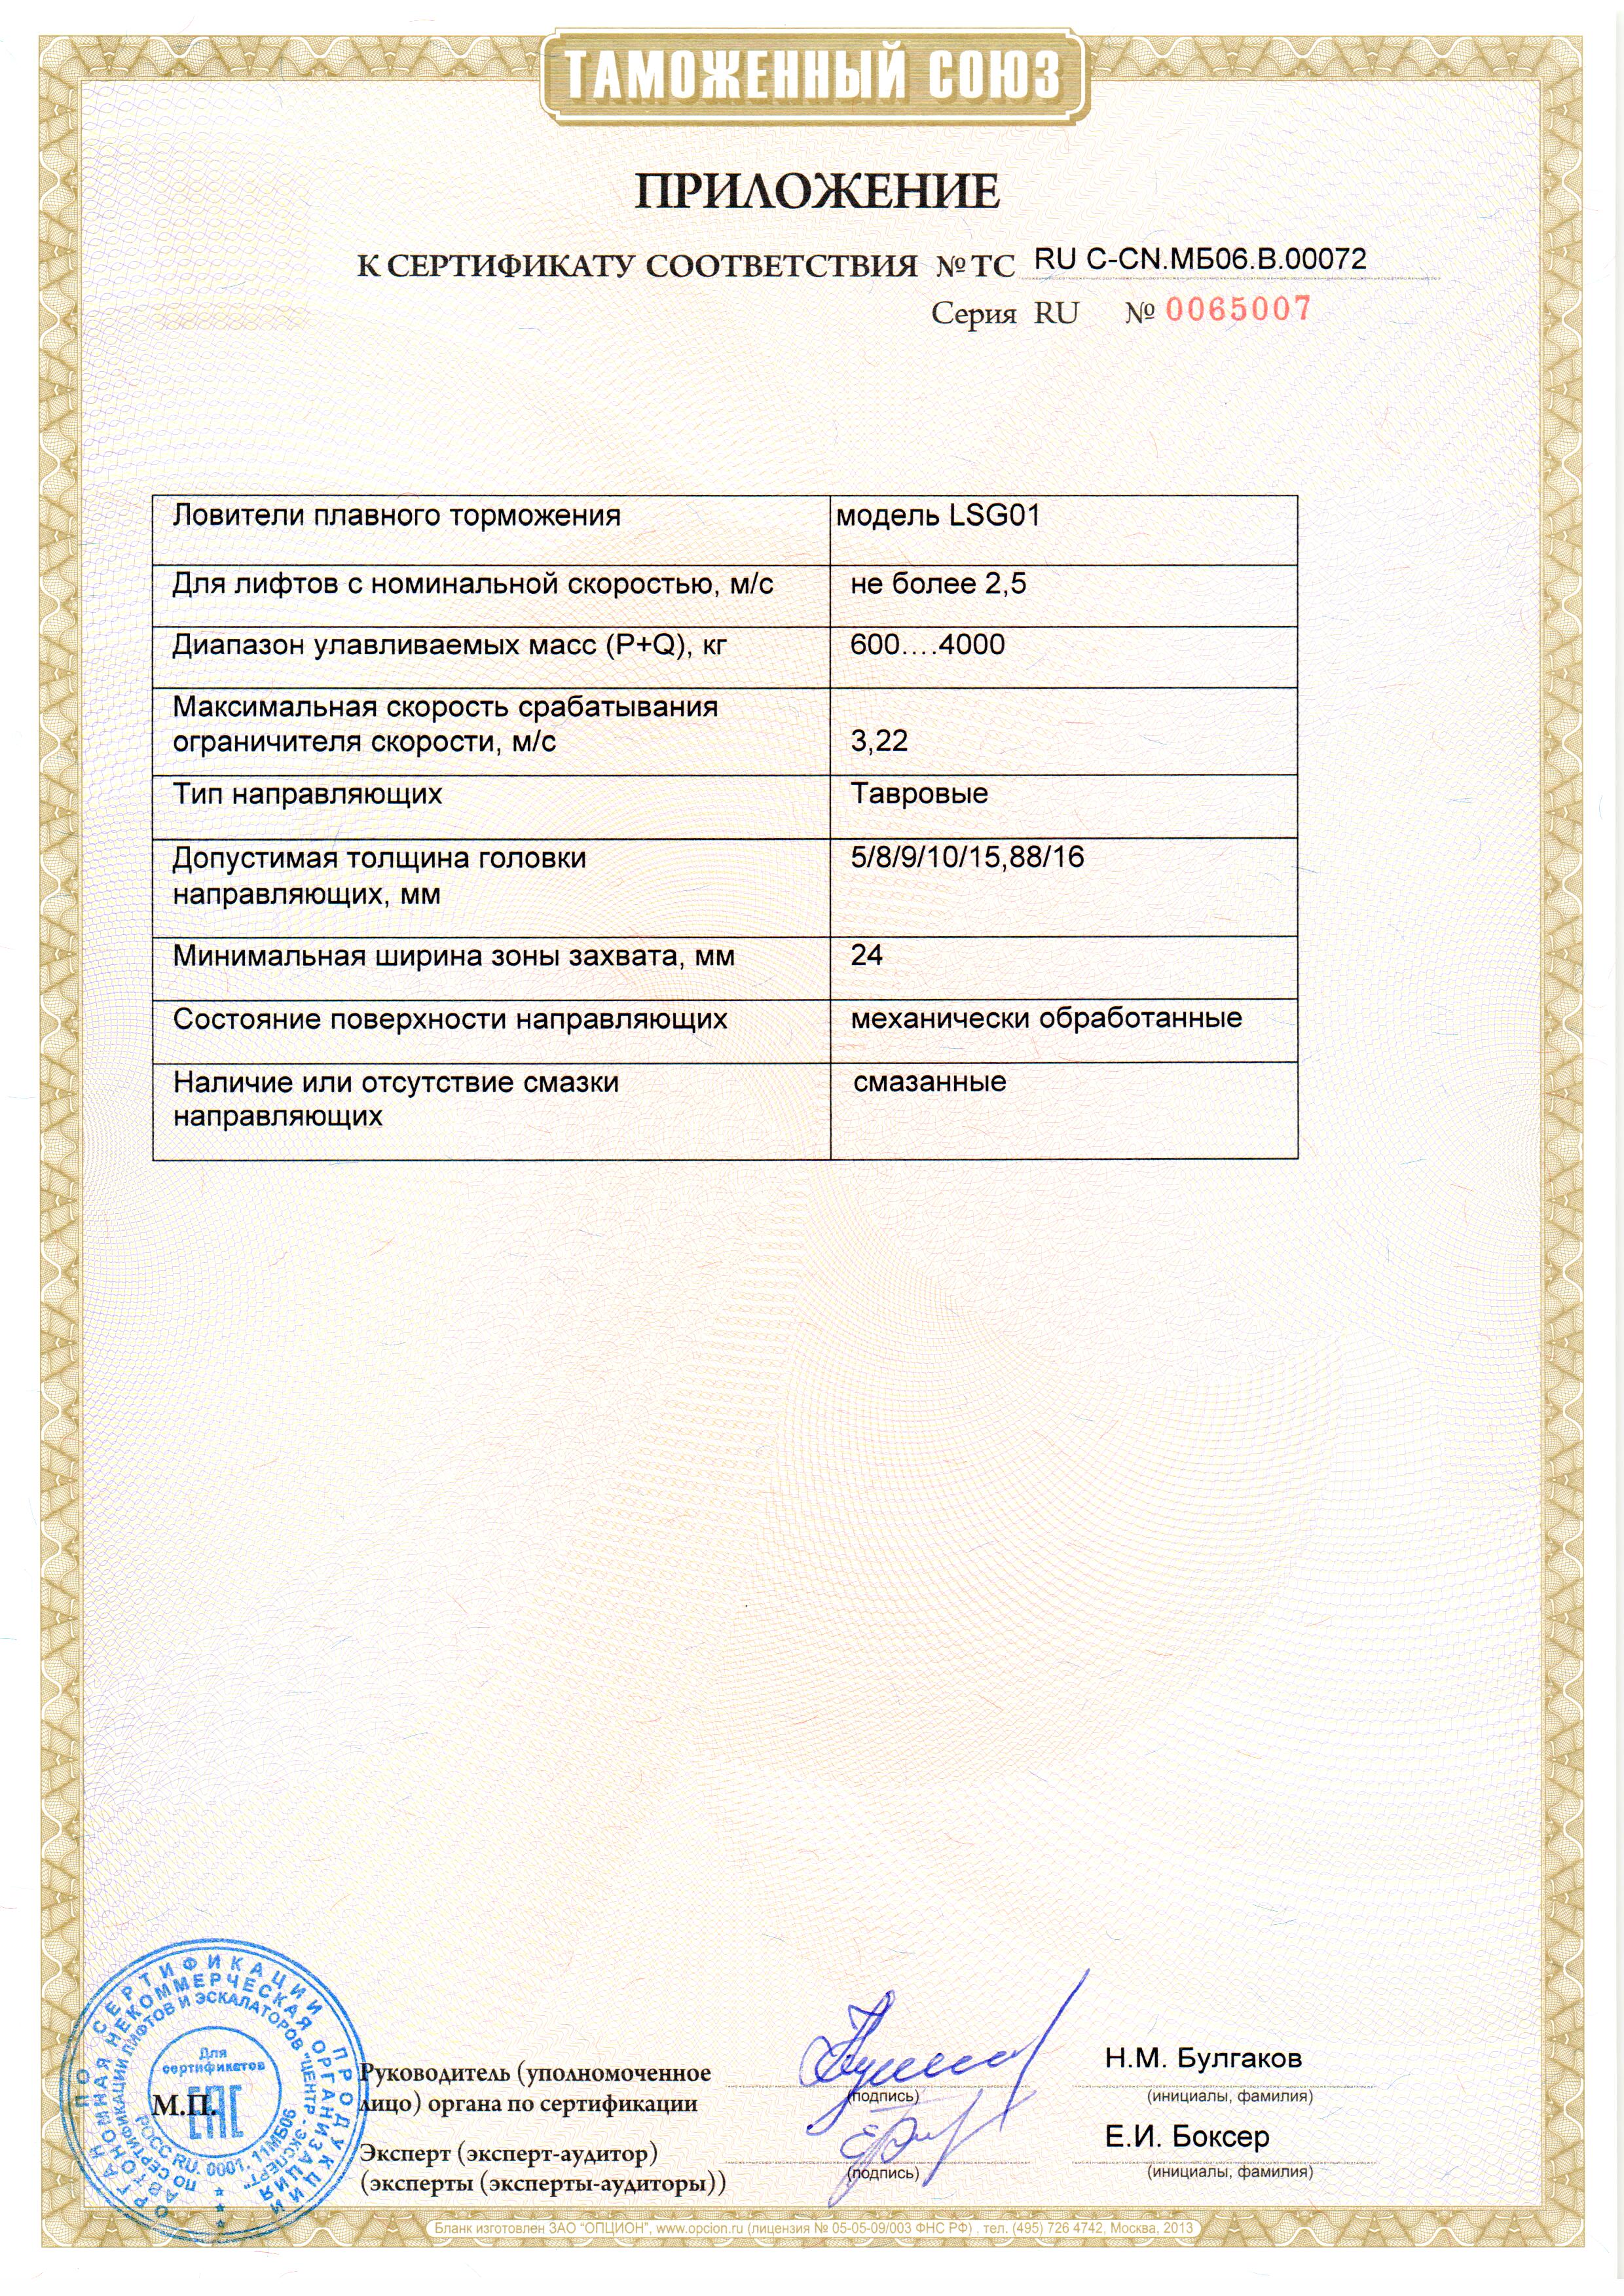 Приложение к сертификату № RU С-CN.МБ06.В.00072